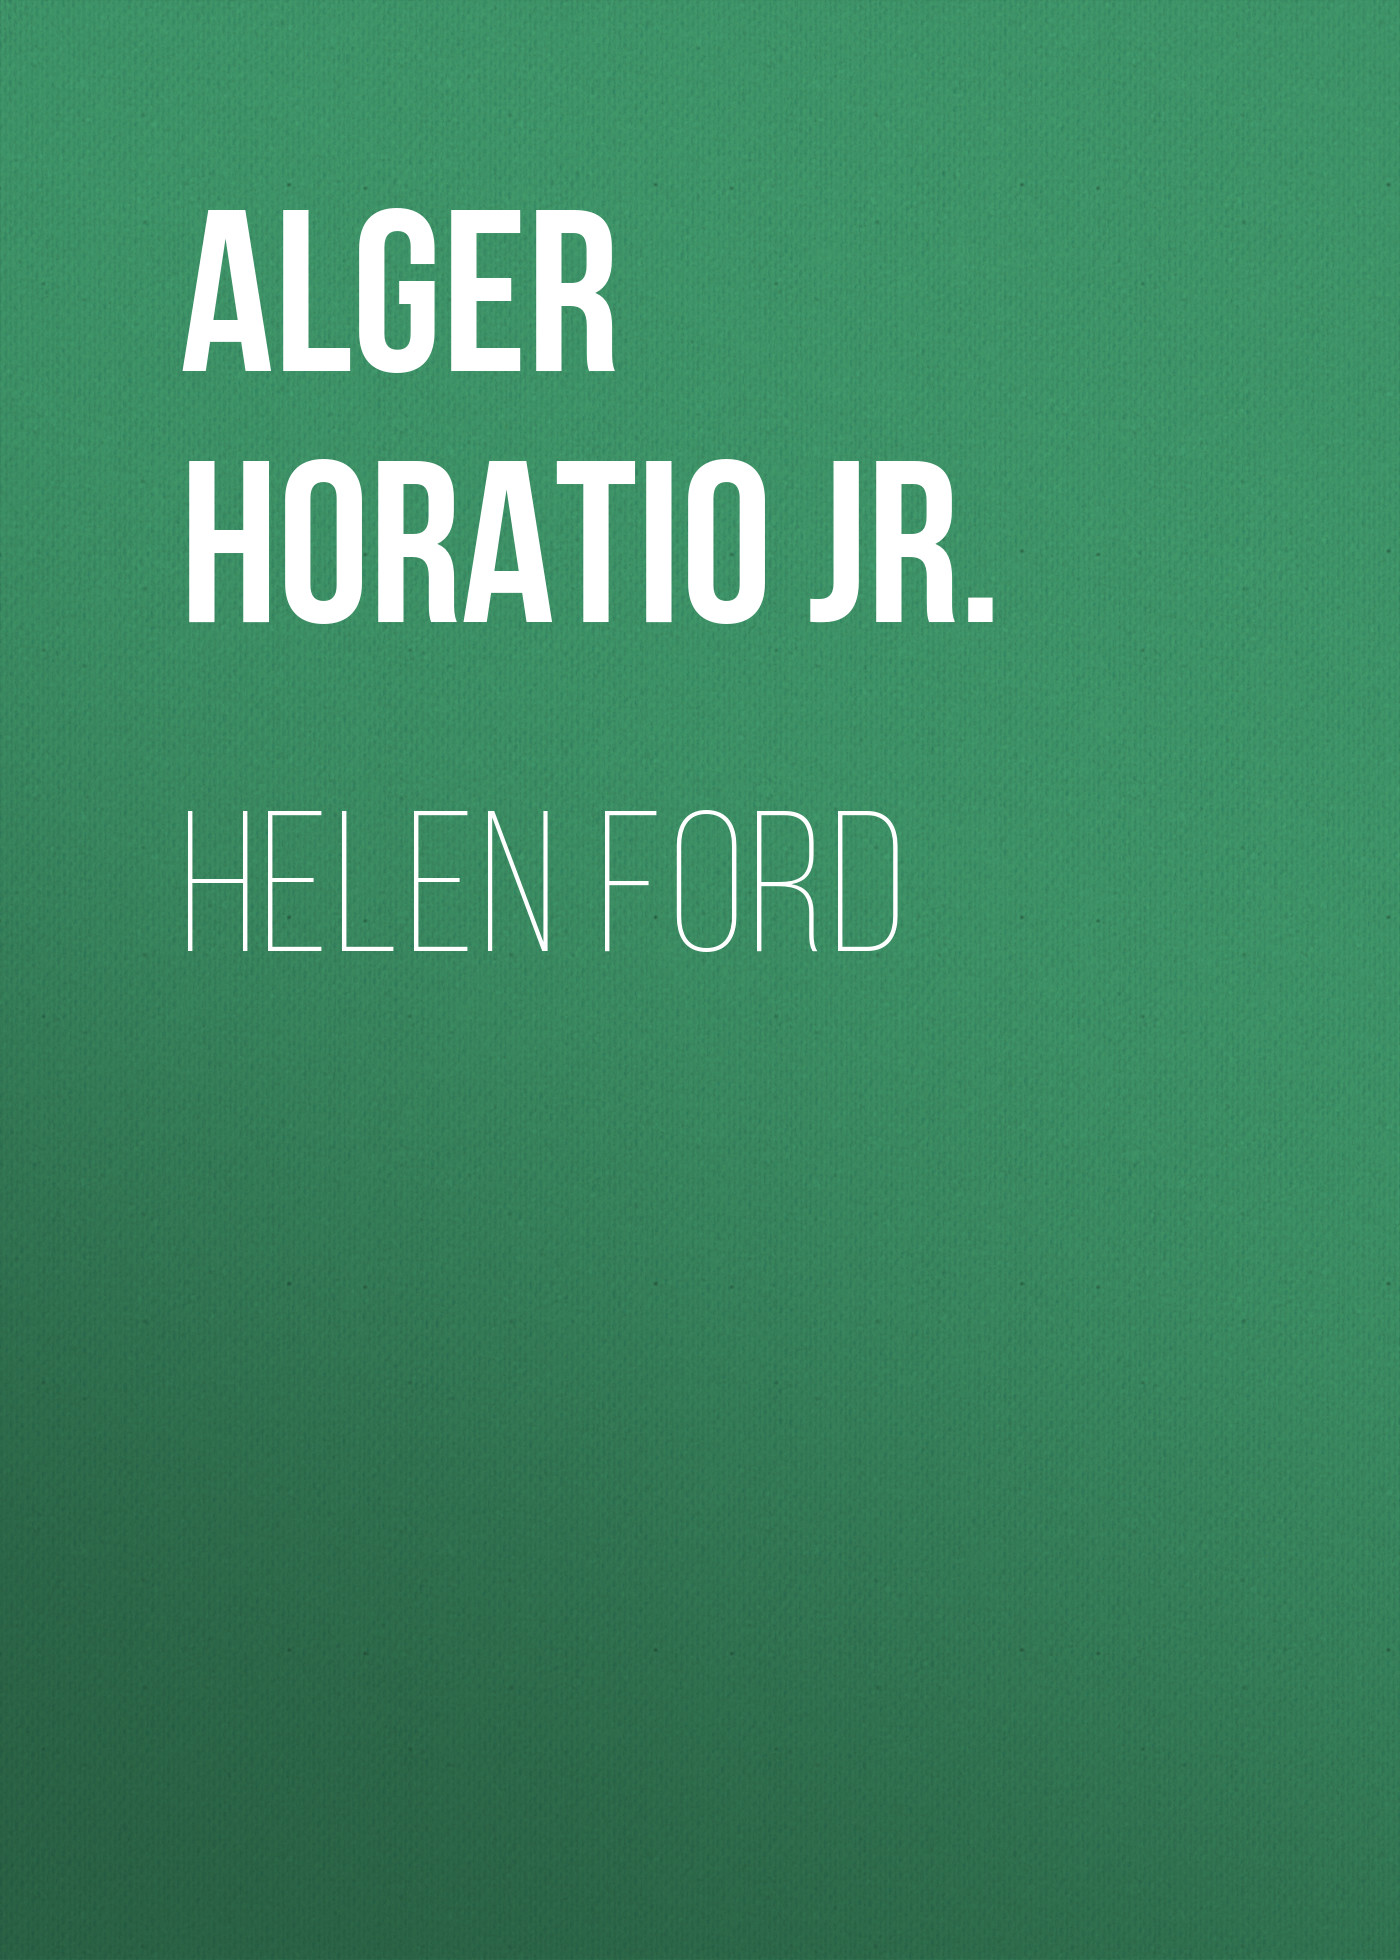 Книга Helen Ford из серии , созданная Horatio Alger, может относится к жанру Зарубежная классика, Литература 19 века, Зарубежная старинная литература. Стоимость электронной книги Helen Ford с идентификатором 34842110 составляет 0 руб.